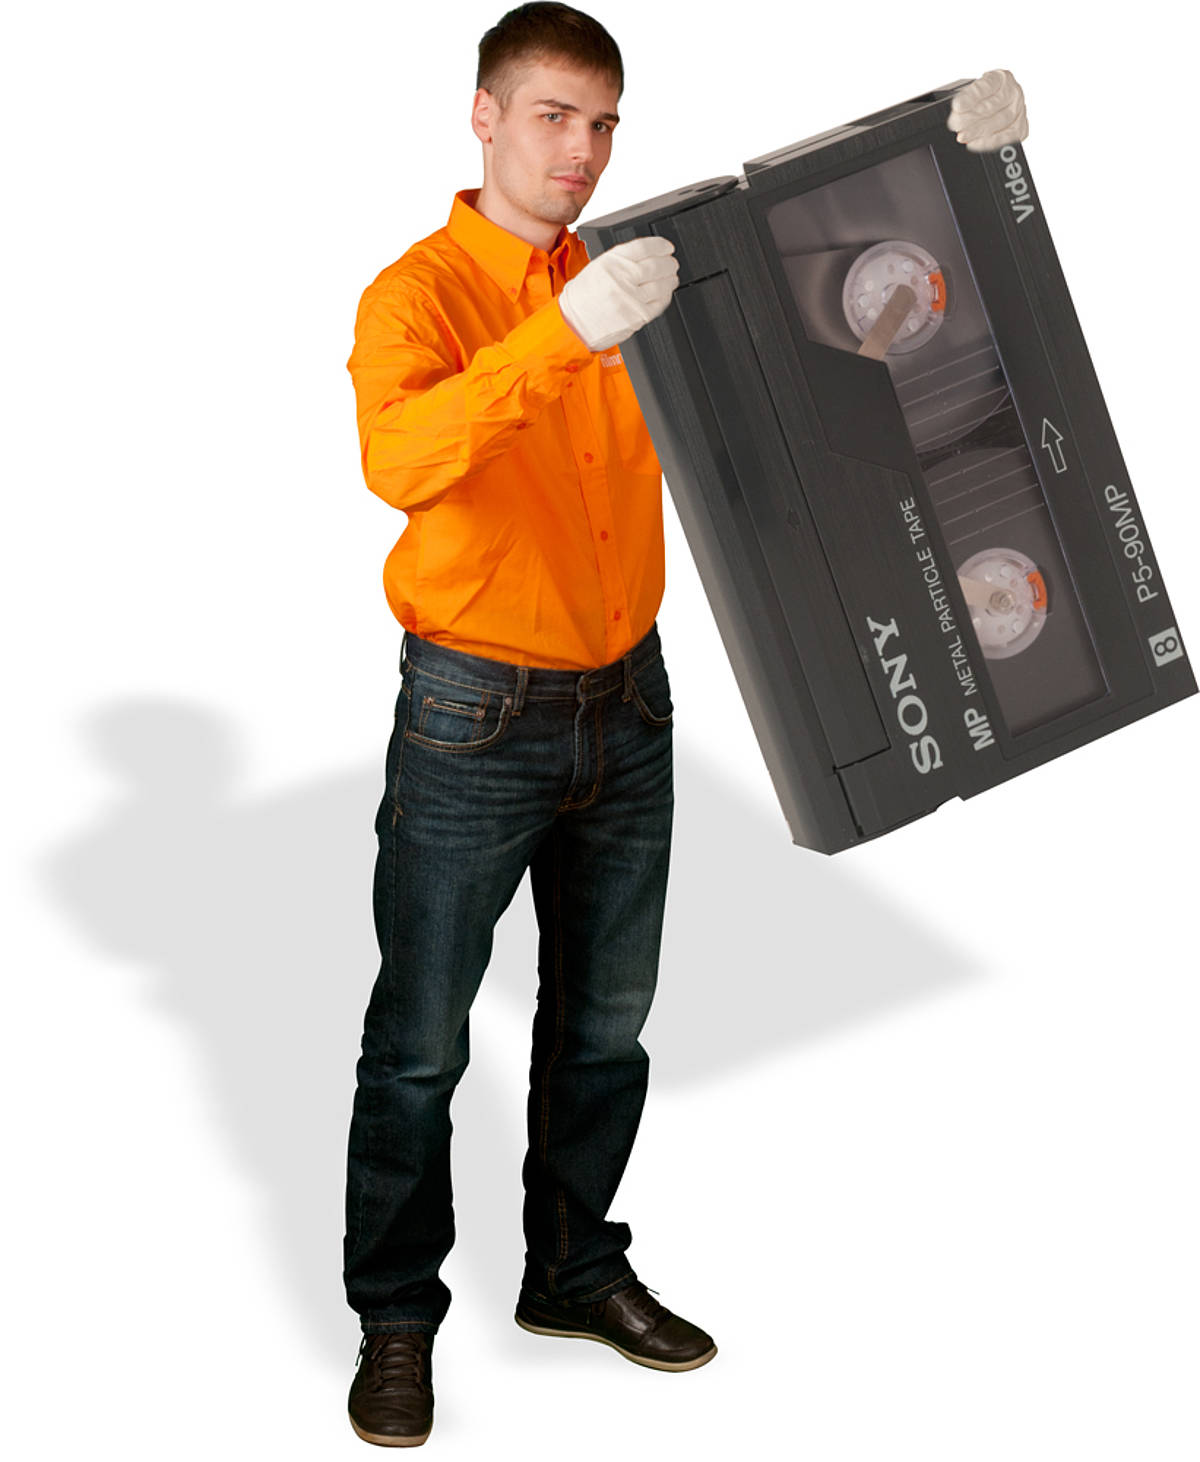 Video2000 digitalisieren durch die Film-Retter